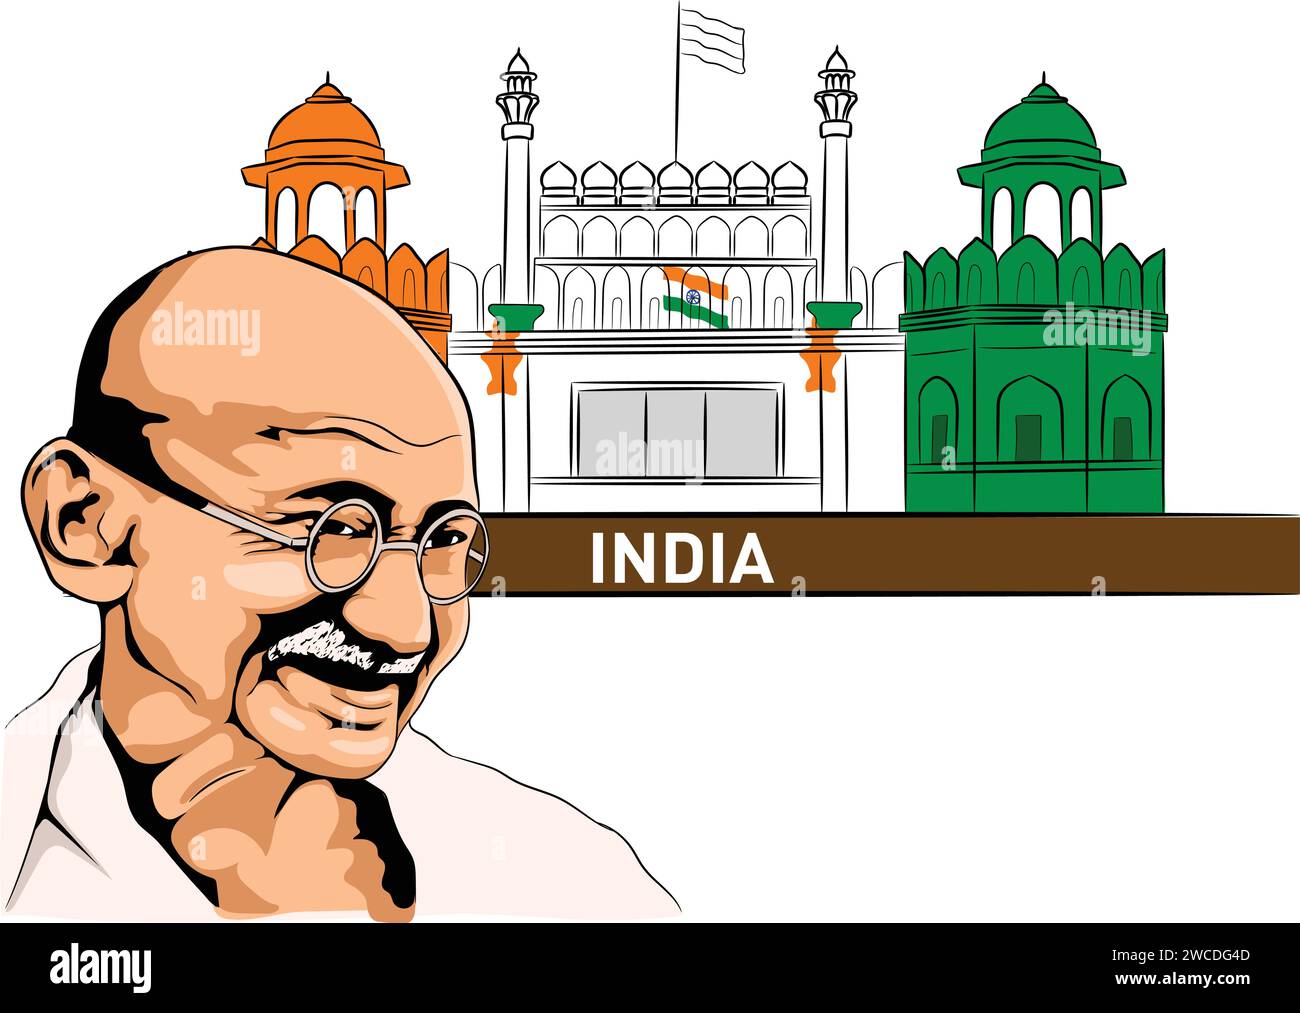 Vektor-Illustration von Mahatma Gandhi mit Hintergrund von Rotem Fort und indischer Flagge. Stock Vektor